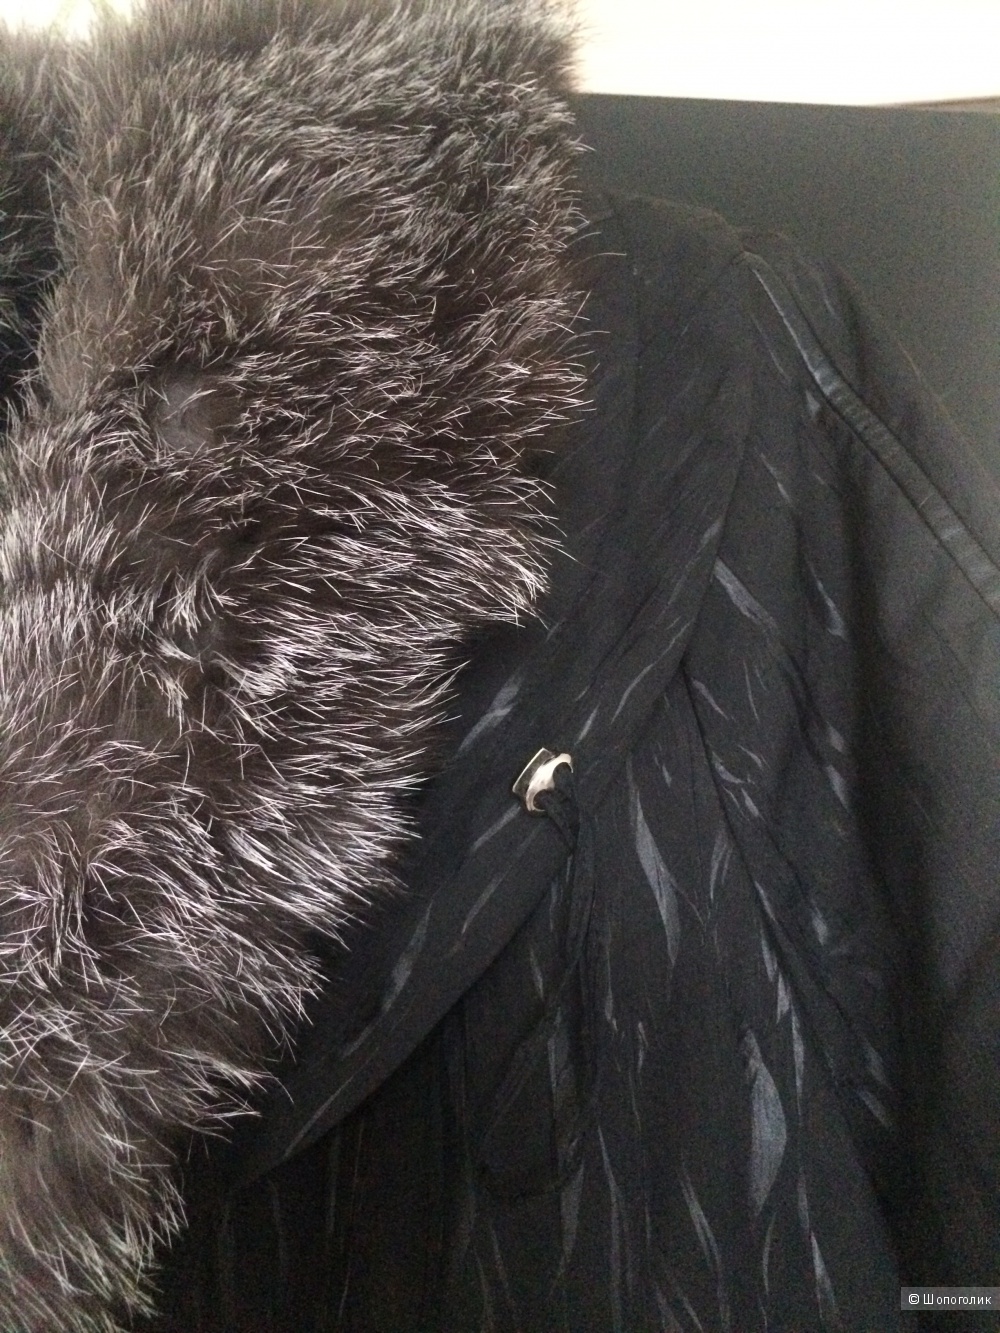 Новое качественное женское пальто (может быть и зимним, и демисезонным)